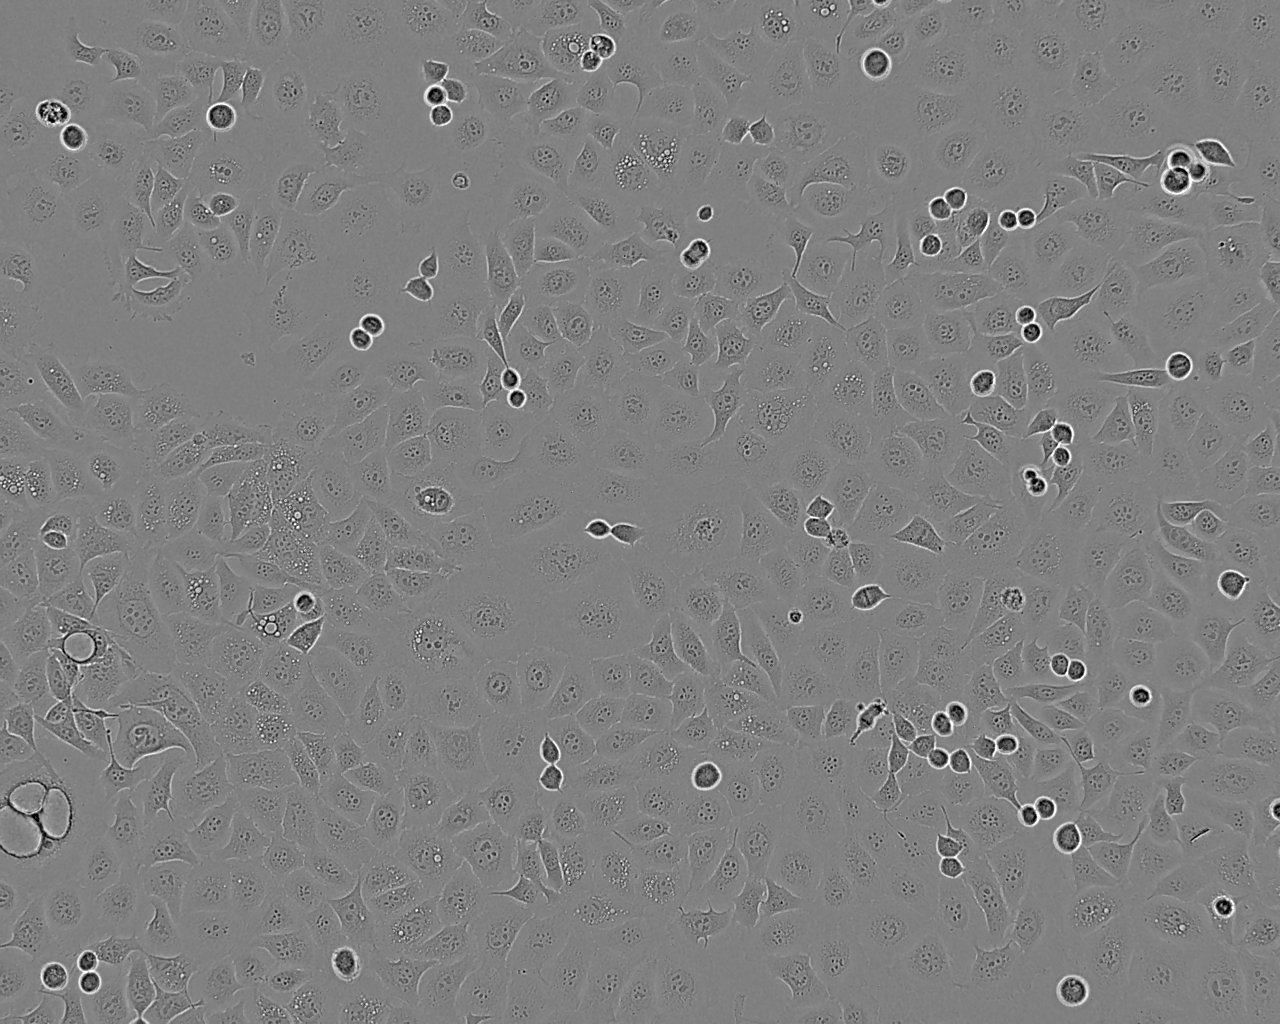 TM3 epithelioid cells小鼠睾丸间质细胞系